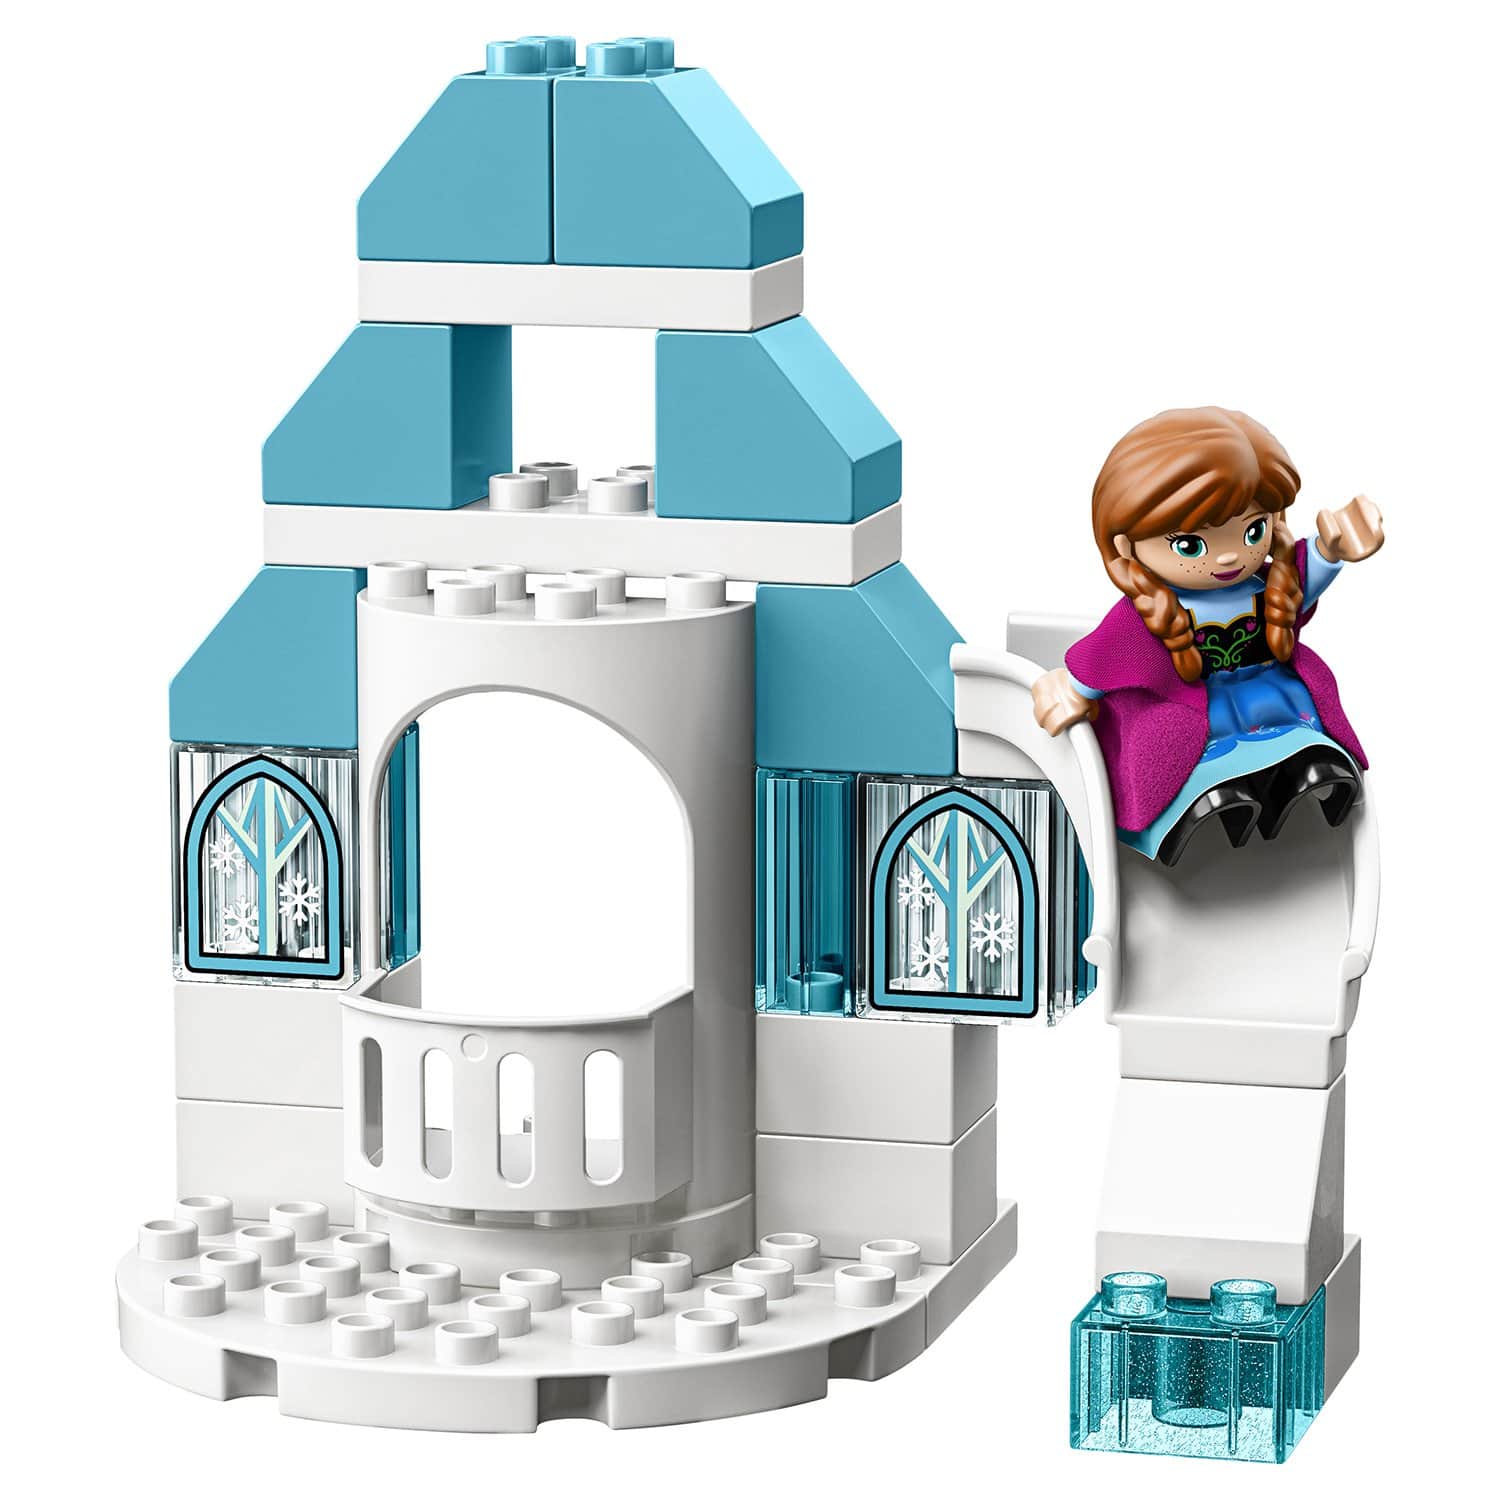 Конструктор LEGO DUPLO 10899 Ледяной замок